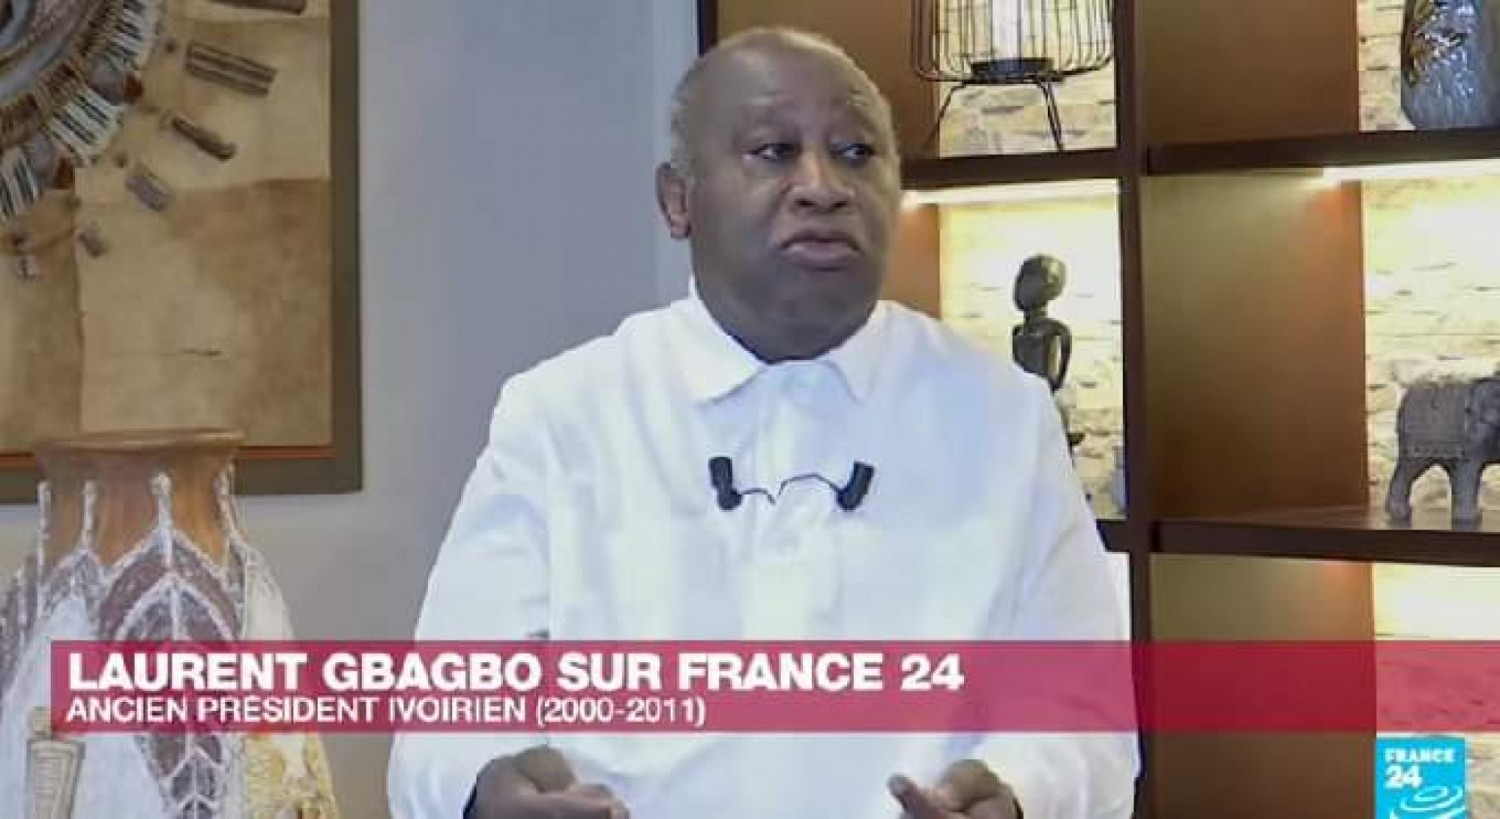 Côte d'Ivoire : Menaces de poursuite de certains membres de l'opposition, Gbagbo réagit et dénonce des manœuvres du gouvernement